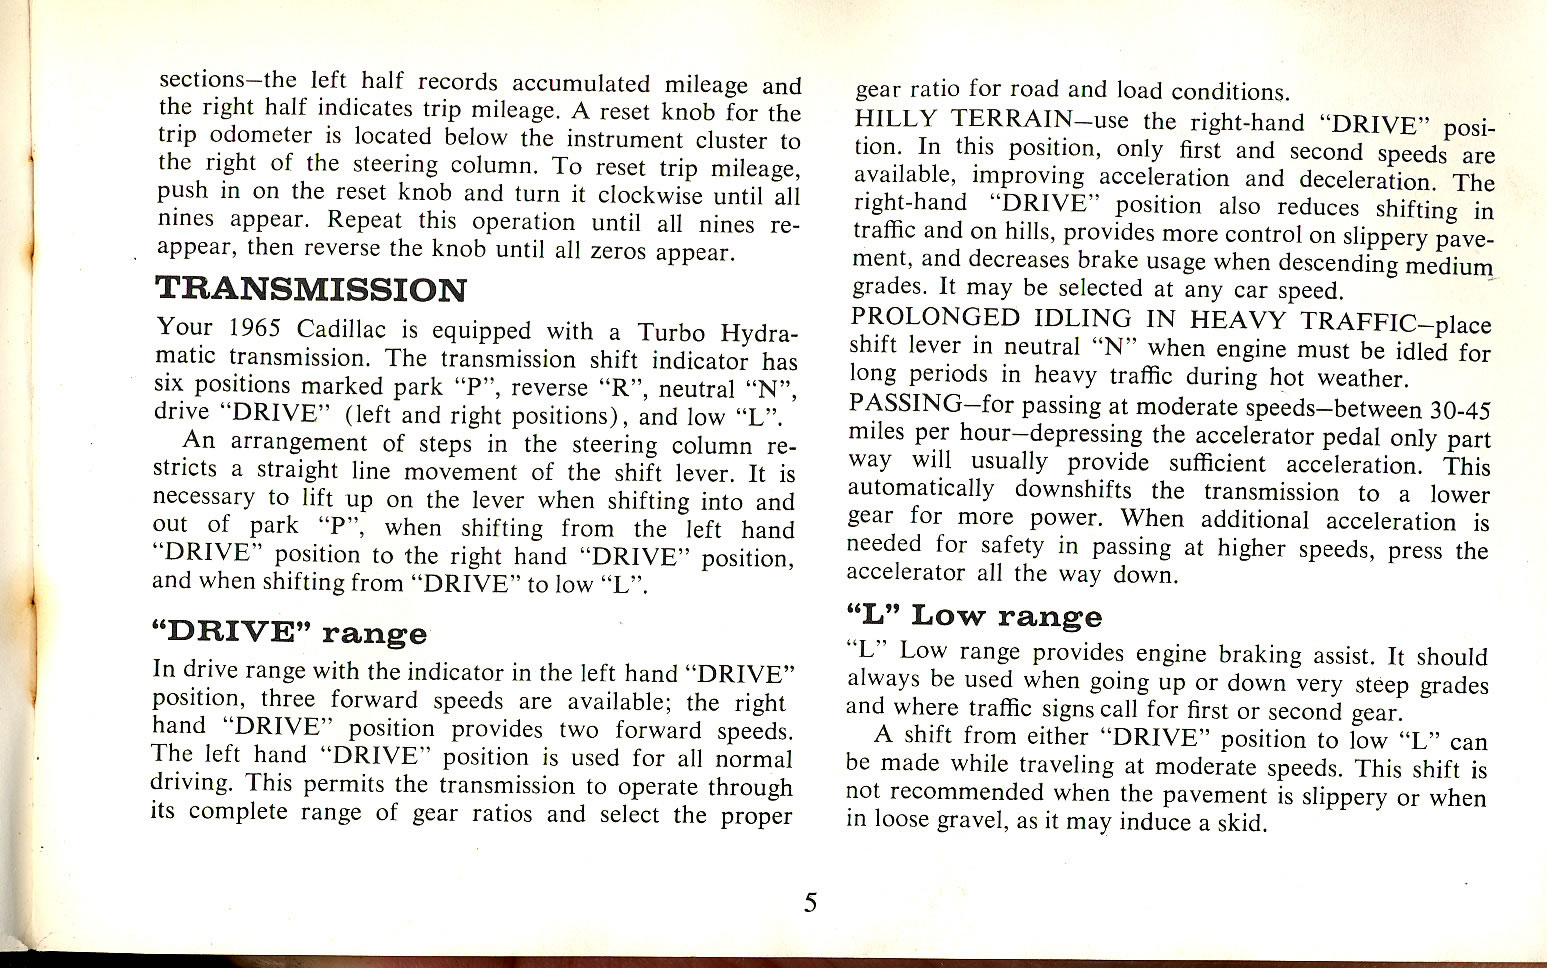 1965 Cadillac Manual-05